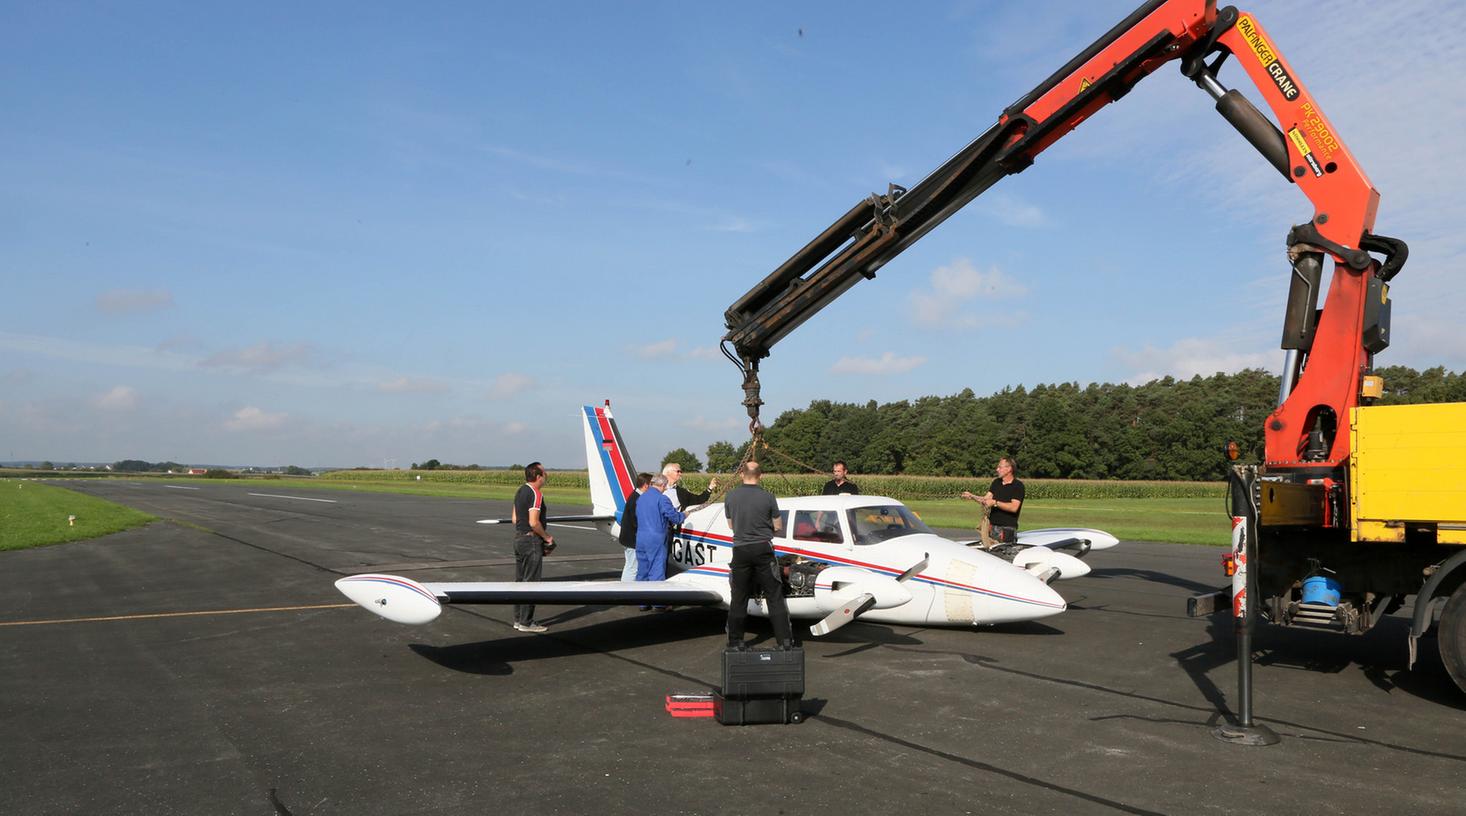 Ein Flugzeug rutschte 190 Meter über die Herzogenauracher Landebahn und kam erst dann zum Stehen.